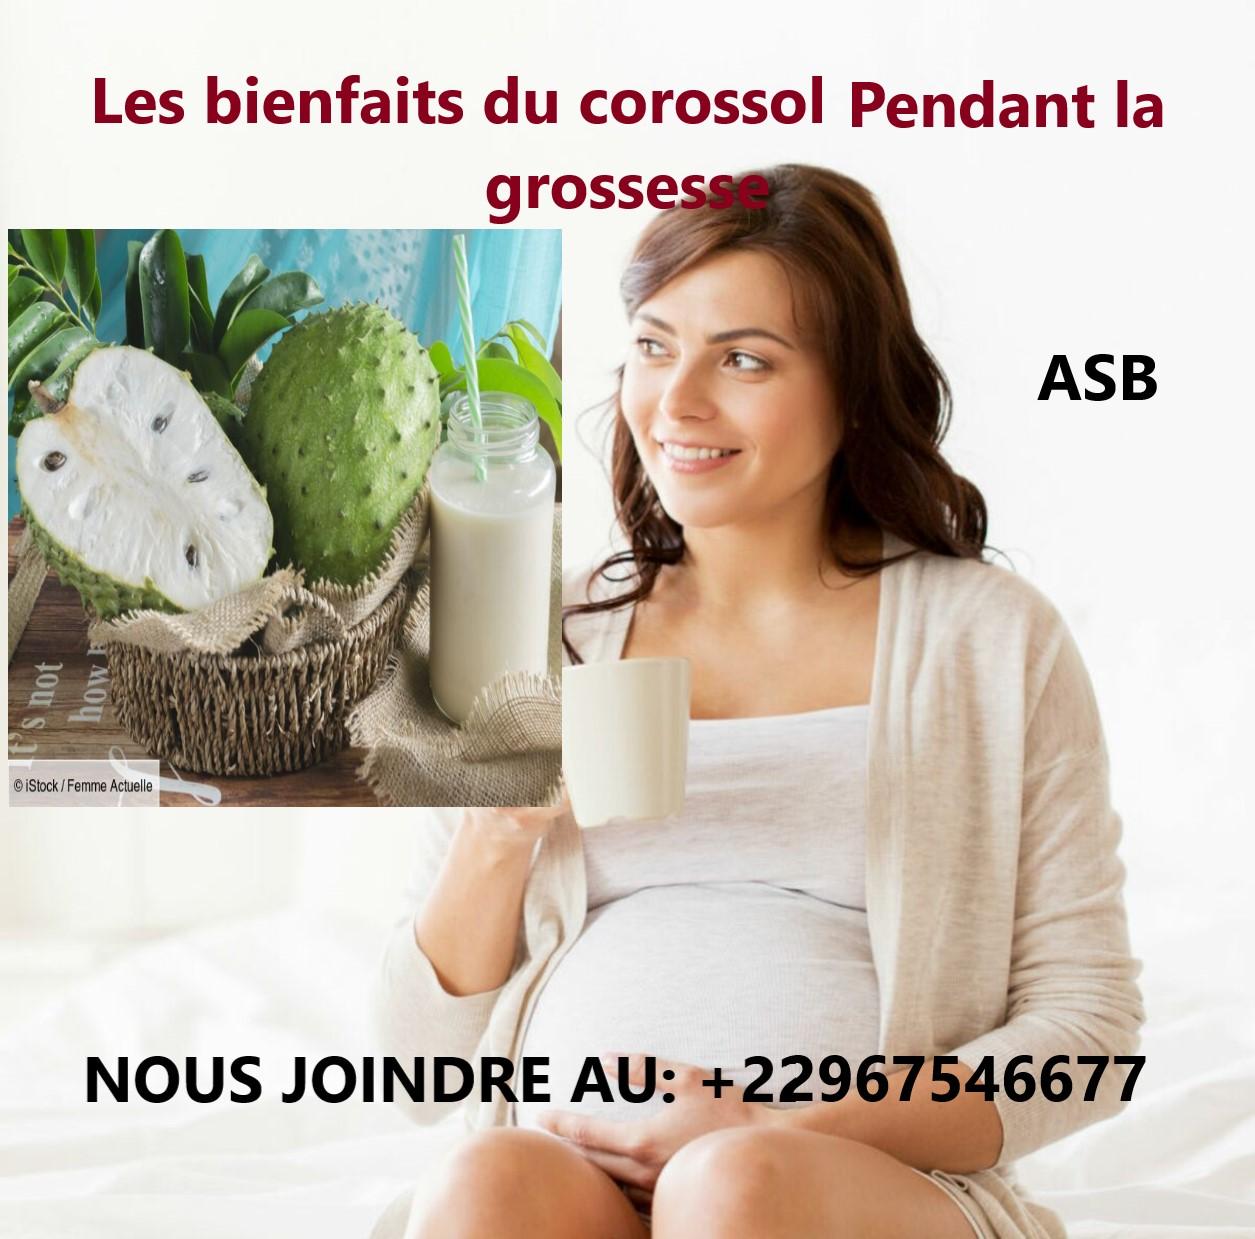 Les bienfaits du corossol pendant la grossesse